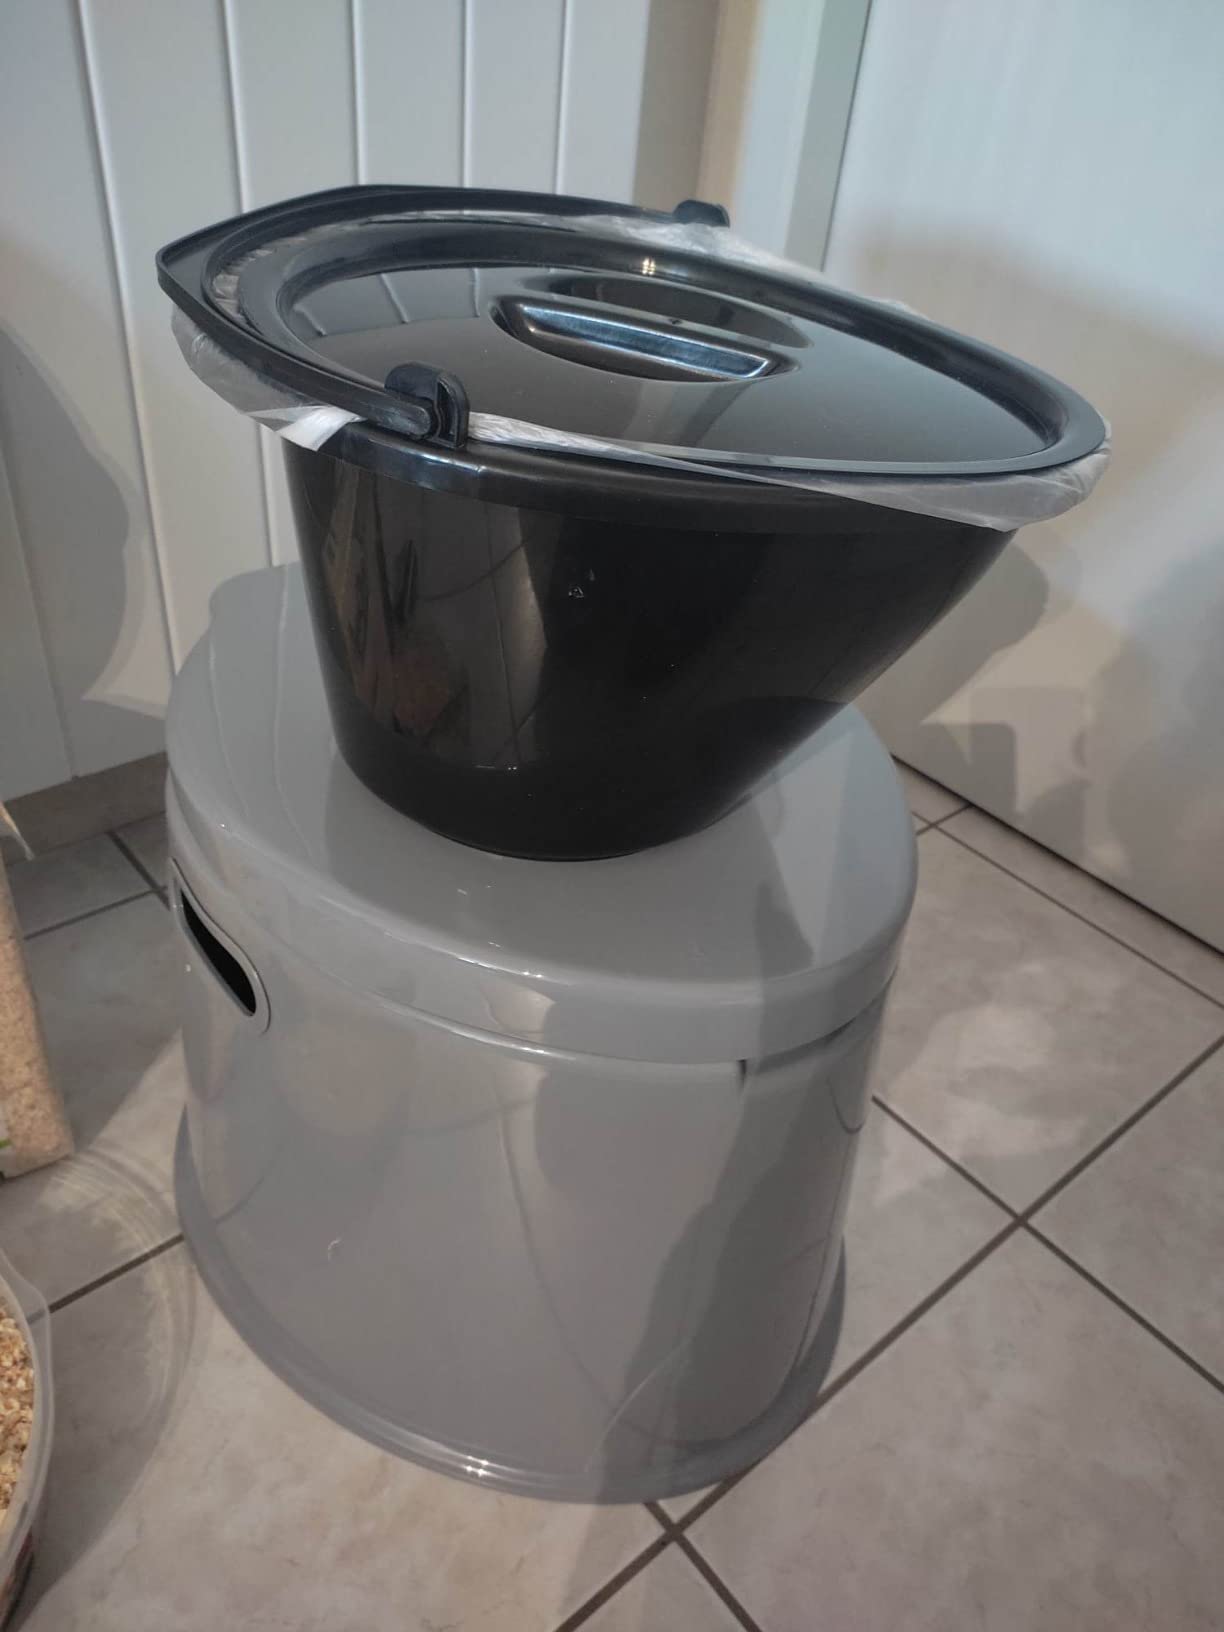 COSTWAY Toilette Sèche Portable Extérieure 5L avec Seau Intérieur